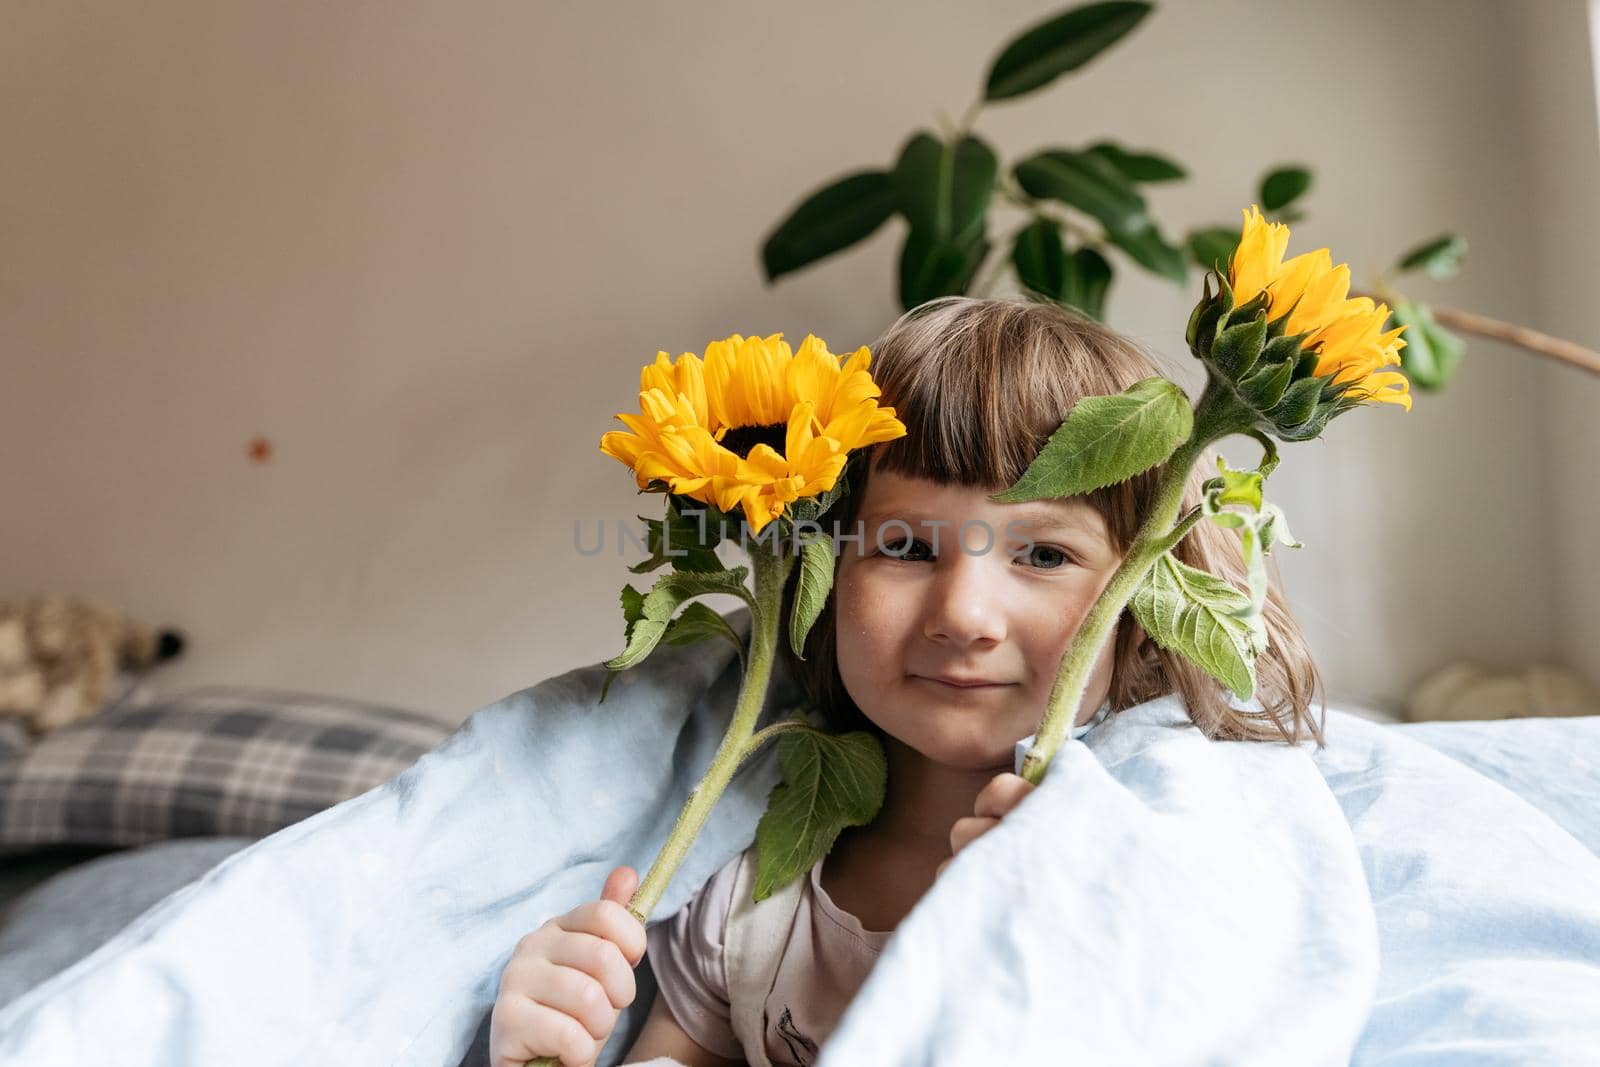 Portrait of a toddler girl holding sunflowers by Varaksina